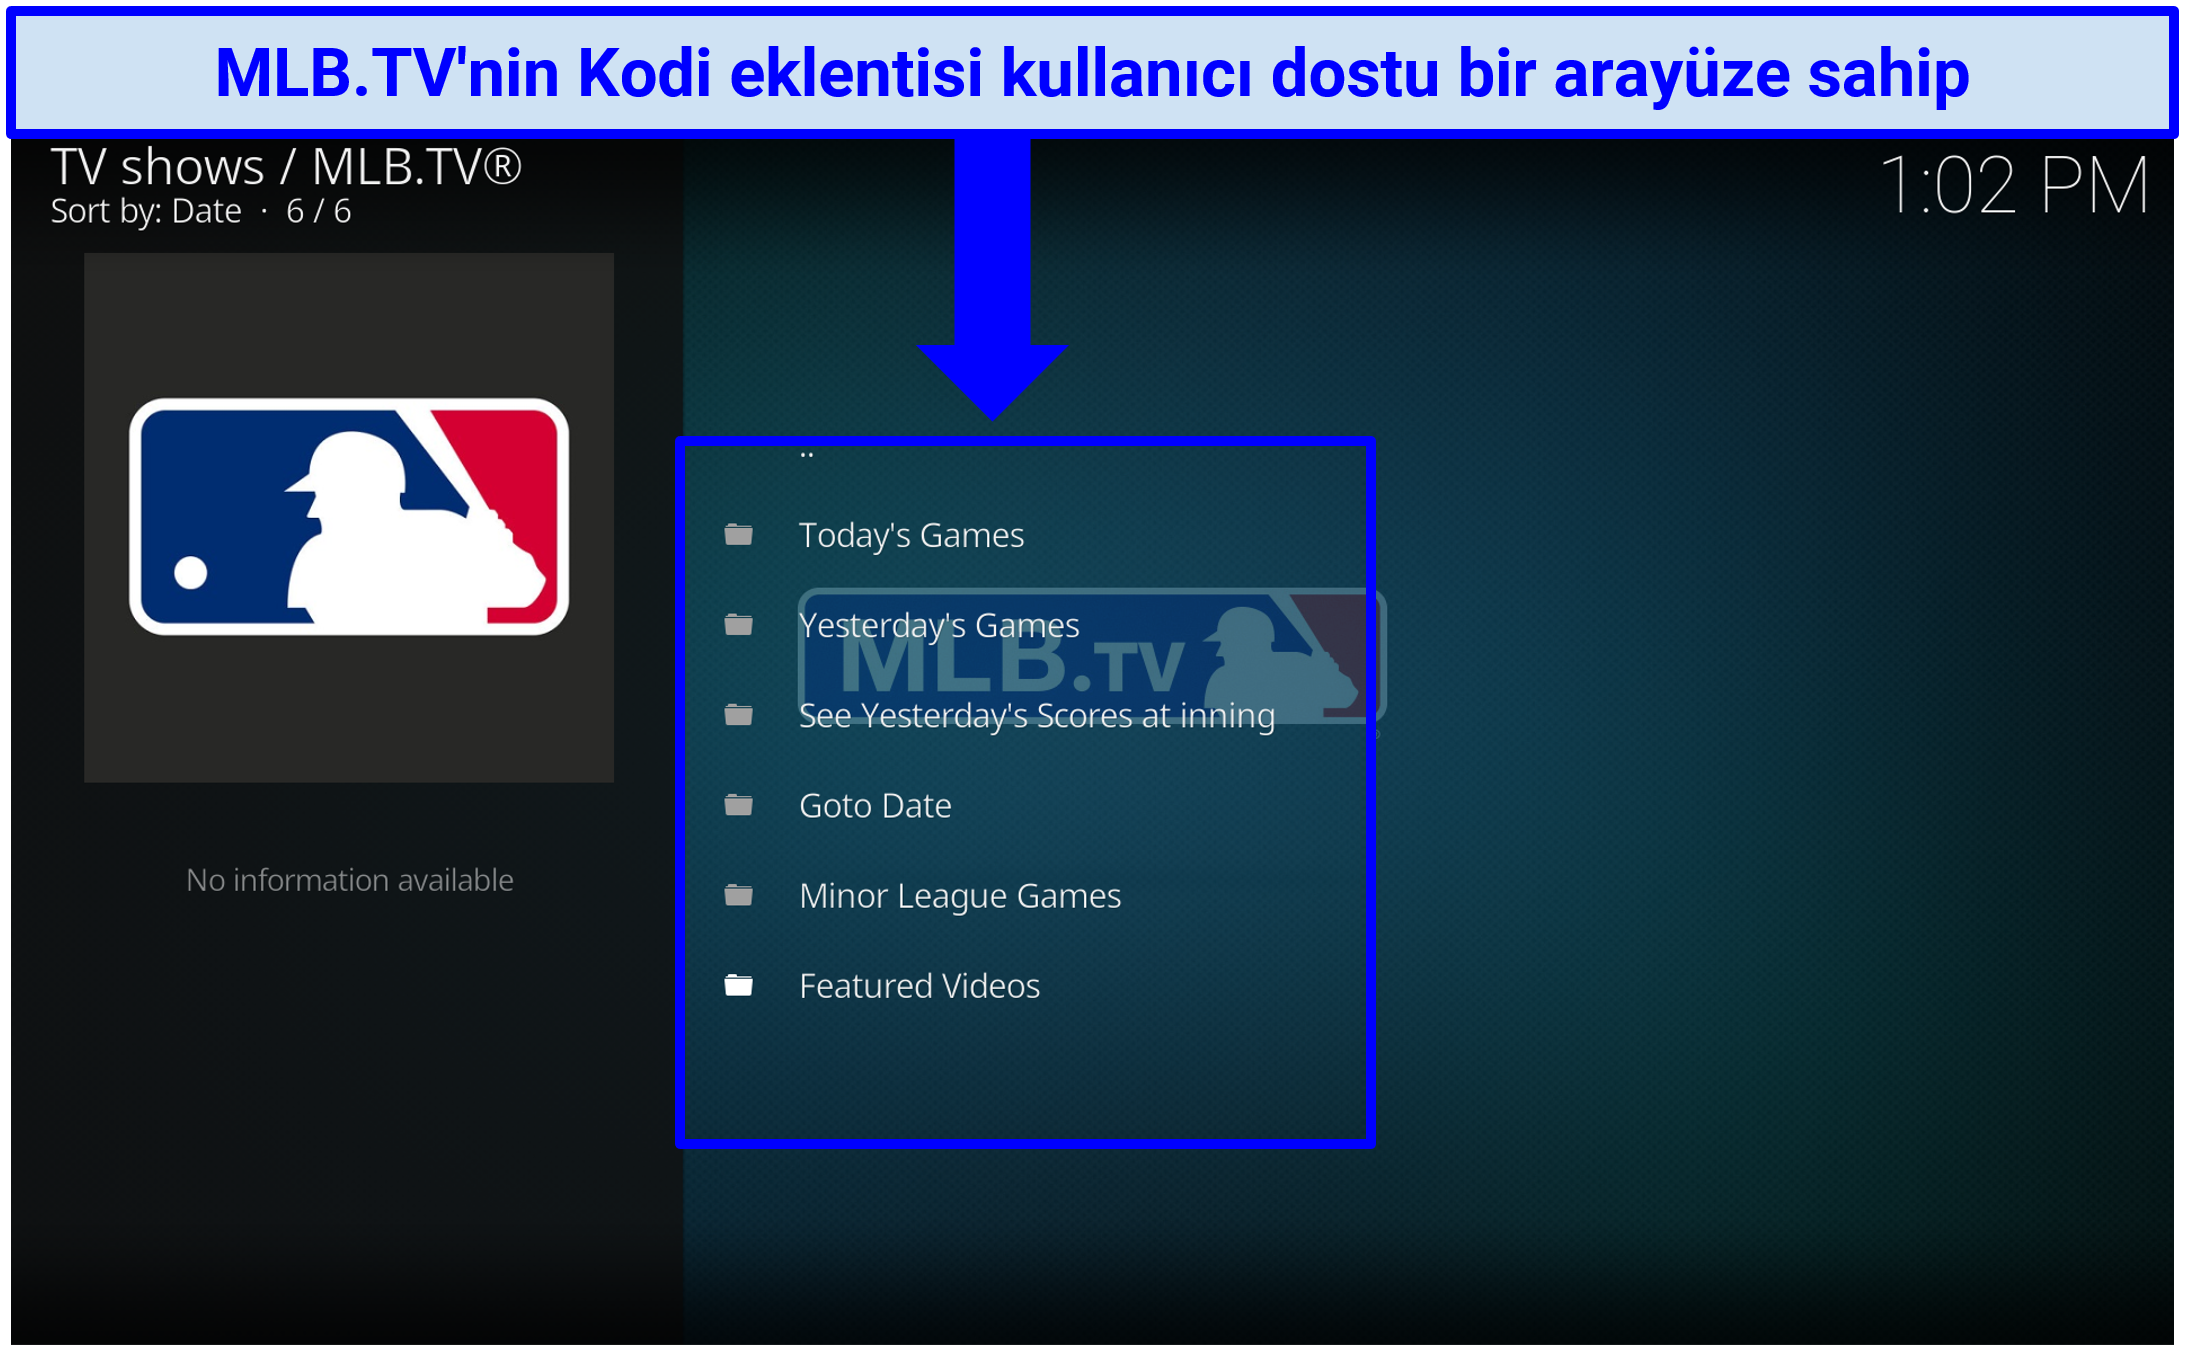 MLB.TV'nin kullanıcı dostu bir arayüze sahip olduğunu gösteren bir ekran görüntüsü